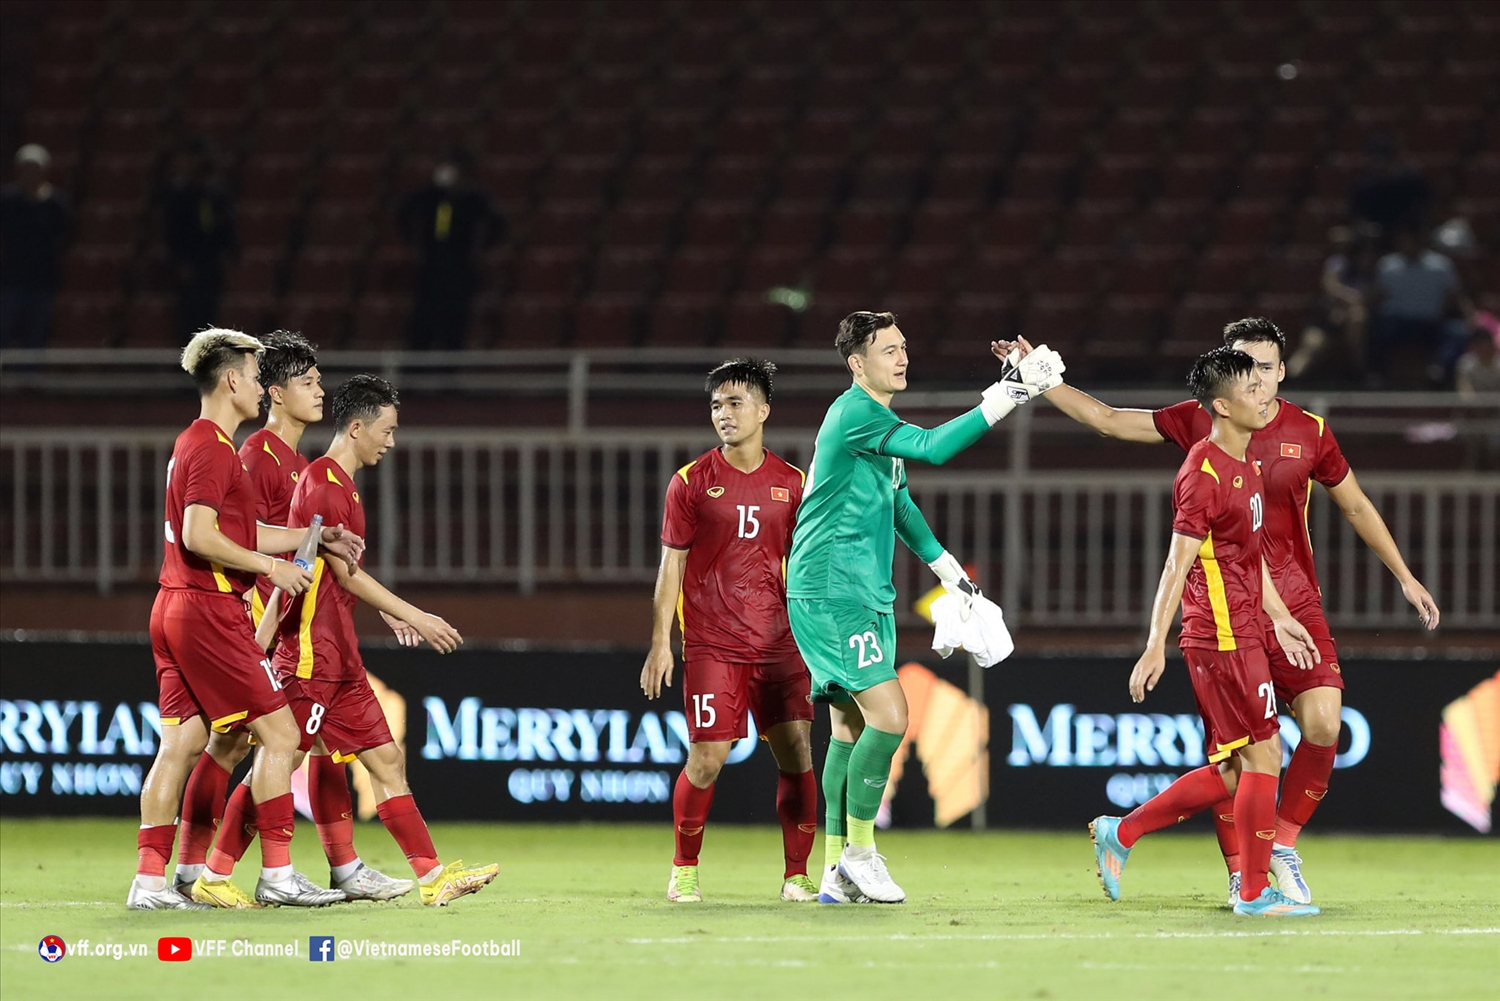 Đội tuyển Việt Nam giành chiến thắng dễ dàng trước Singapore